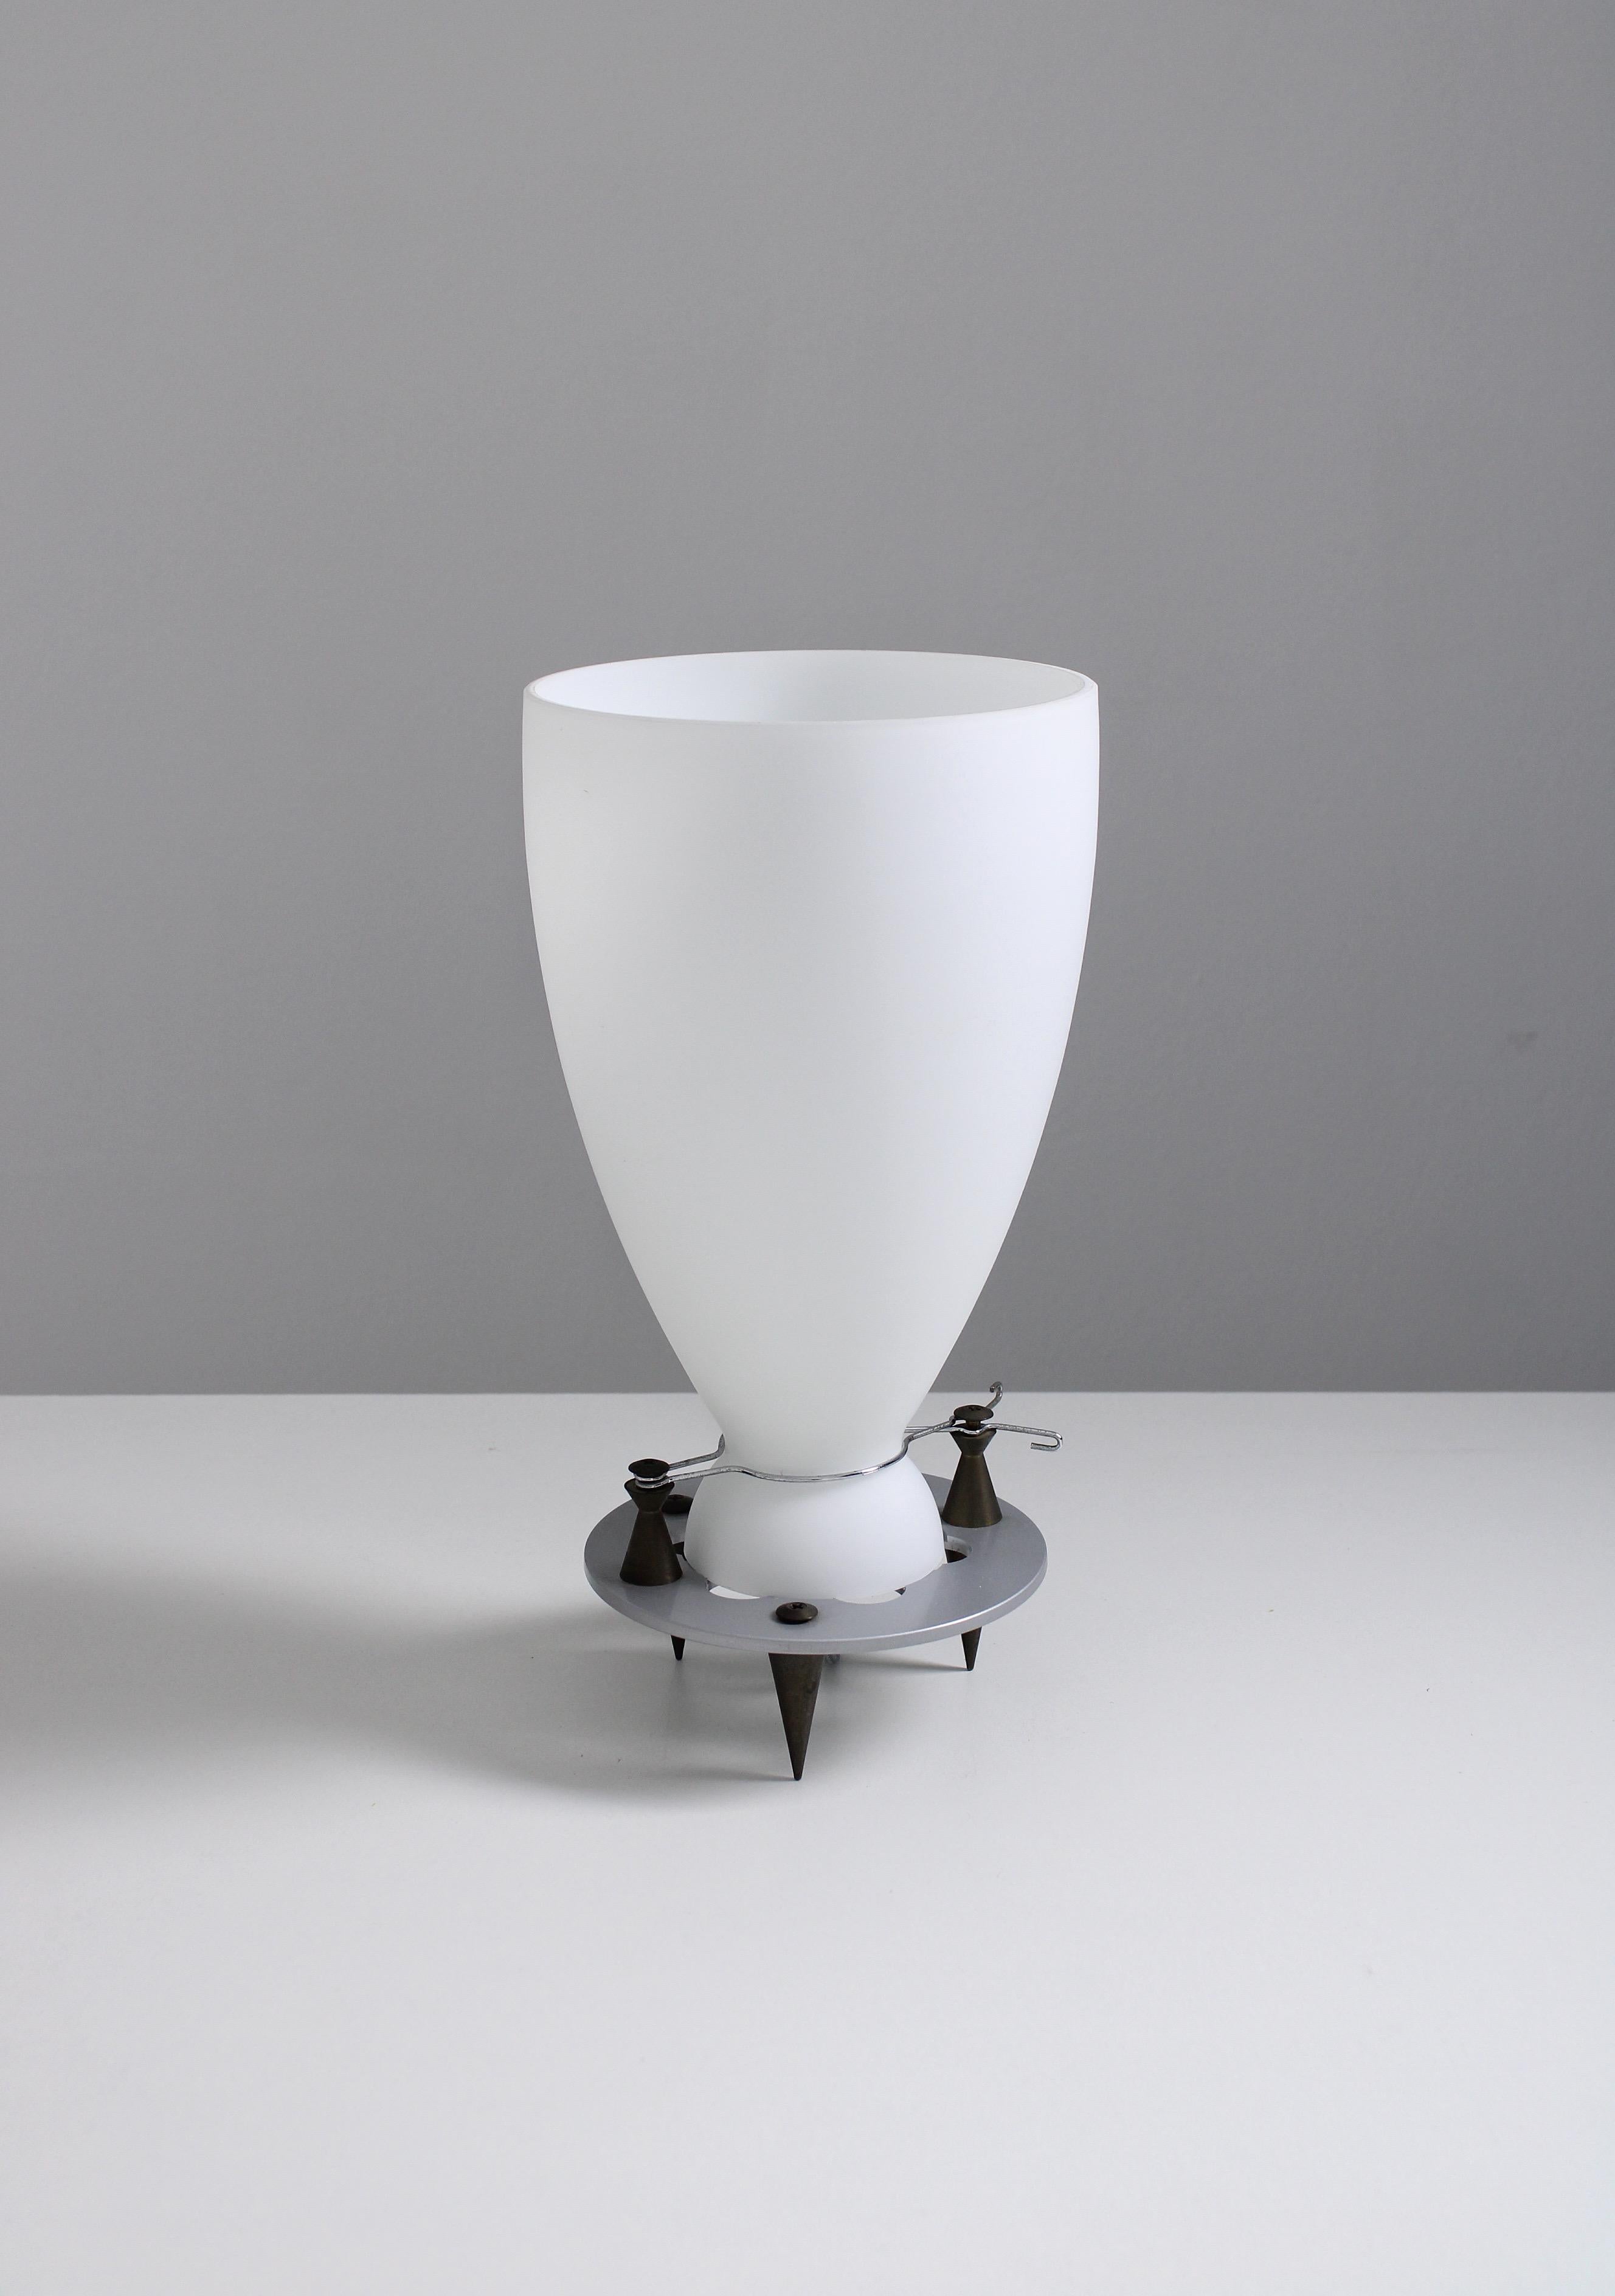 Lampe de table, modèle Franceschina. Conçu par Umberto Riva en 1989. Produit par Fontana Arte avec des matériaux de la plus haute qualité tels que le bronze et le verre opalin doux et satiné. Un design qui présente des caractéristiques similaires à